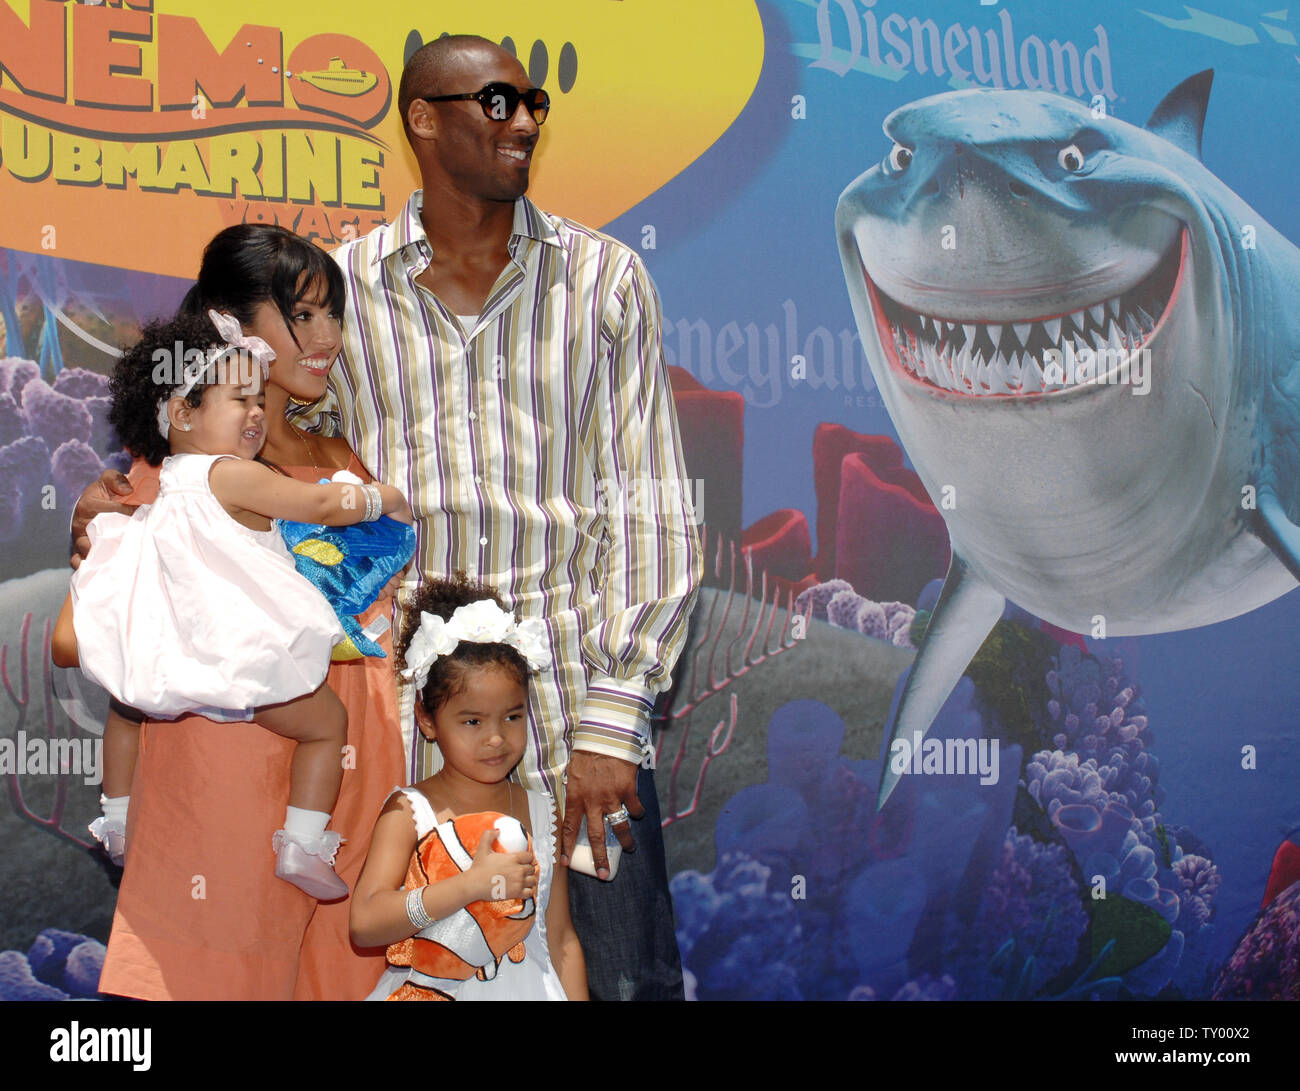 Los Angeles Lakers giocatore di basket Kobe Bryant e sua moglie Vanessa arrivano con le loro figlie Gianna (L) e Natalia per la celebrità anteprima della ricerca di Nemo viaggio sottomarino attrazione a Disneyland Park di Anaheim, in California, il 10 giugno 2007. (UPI foto/Jim Ruymen) Foto Stock